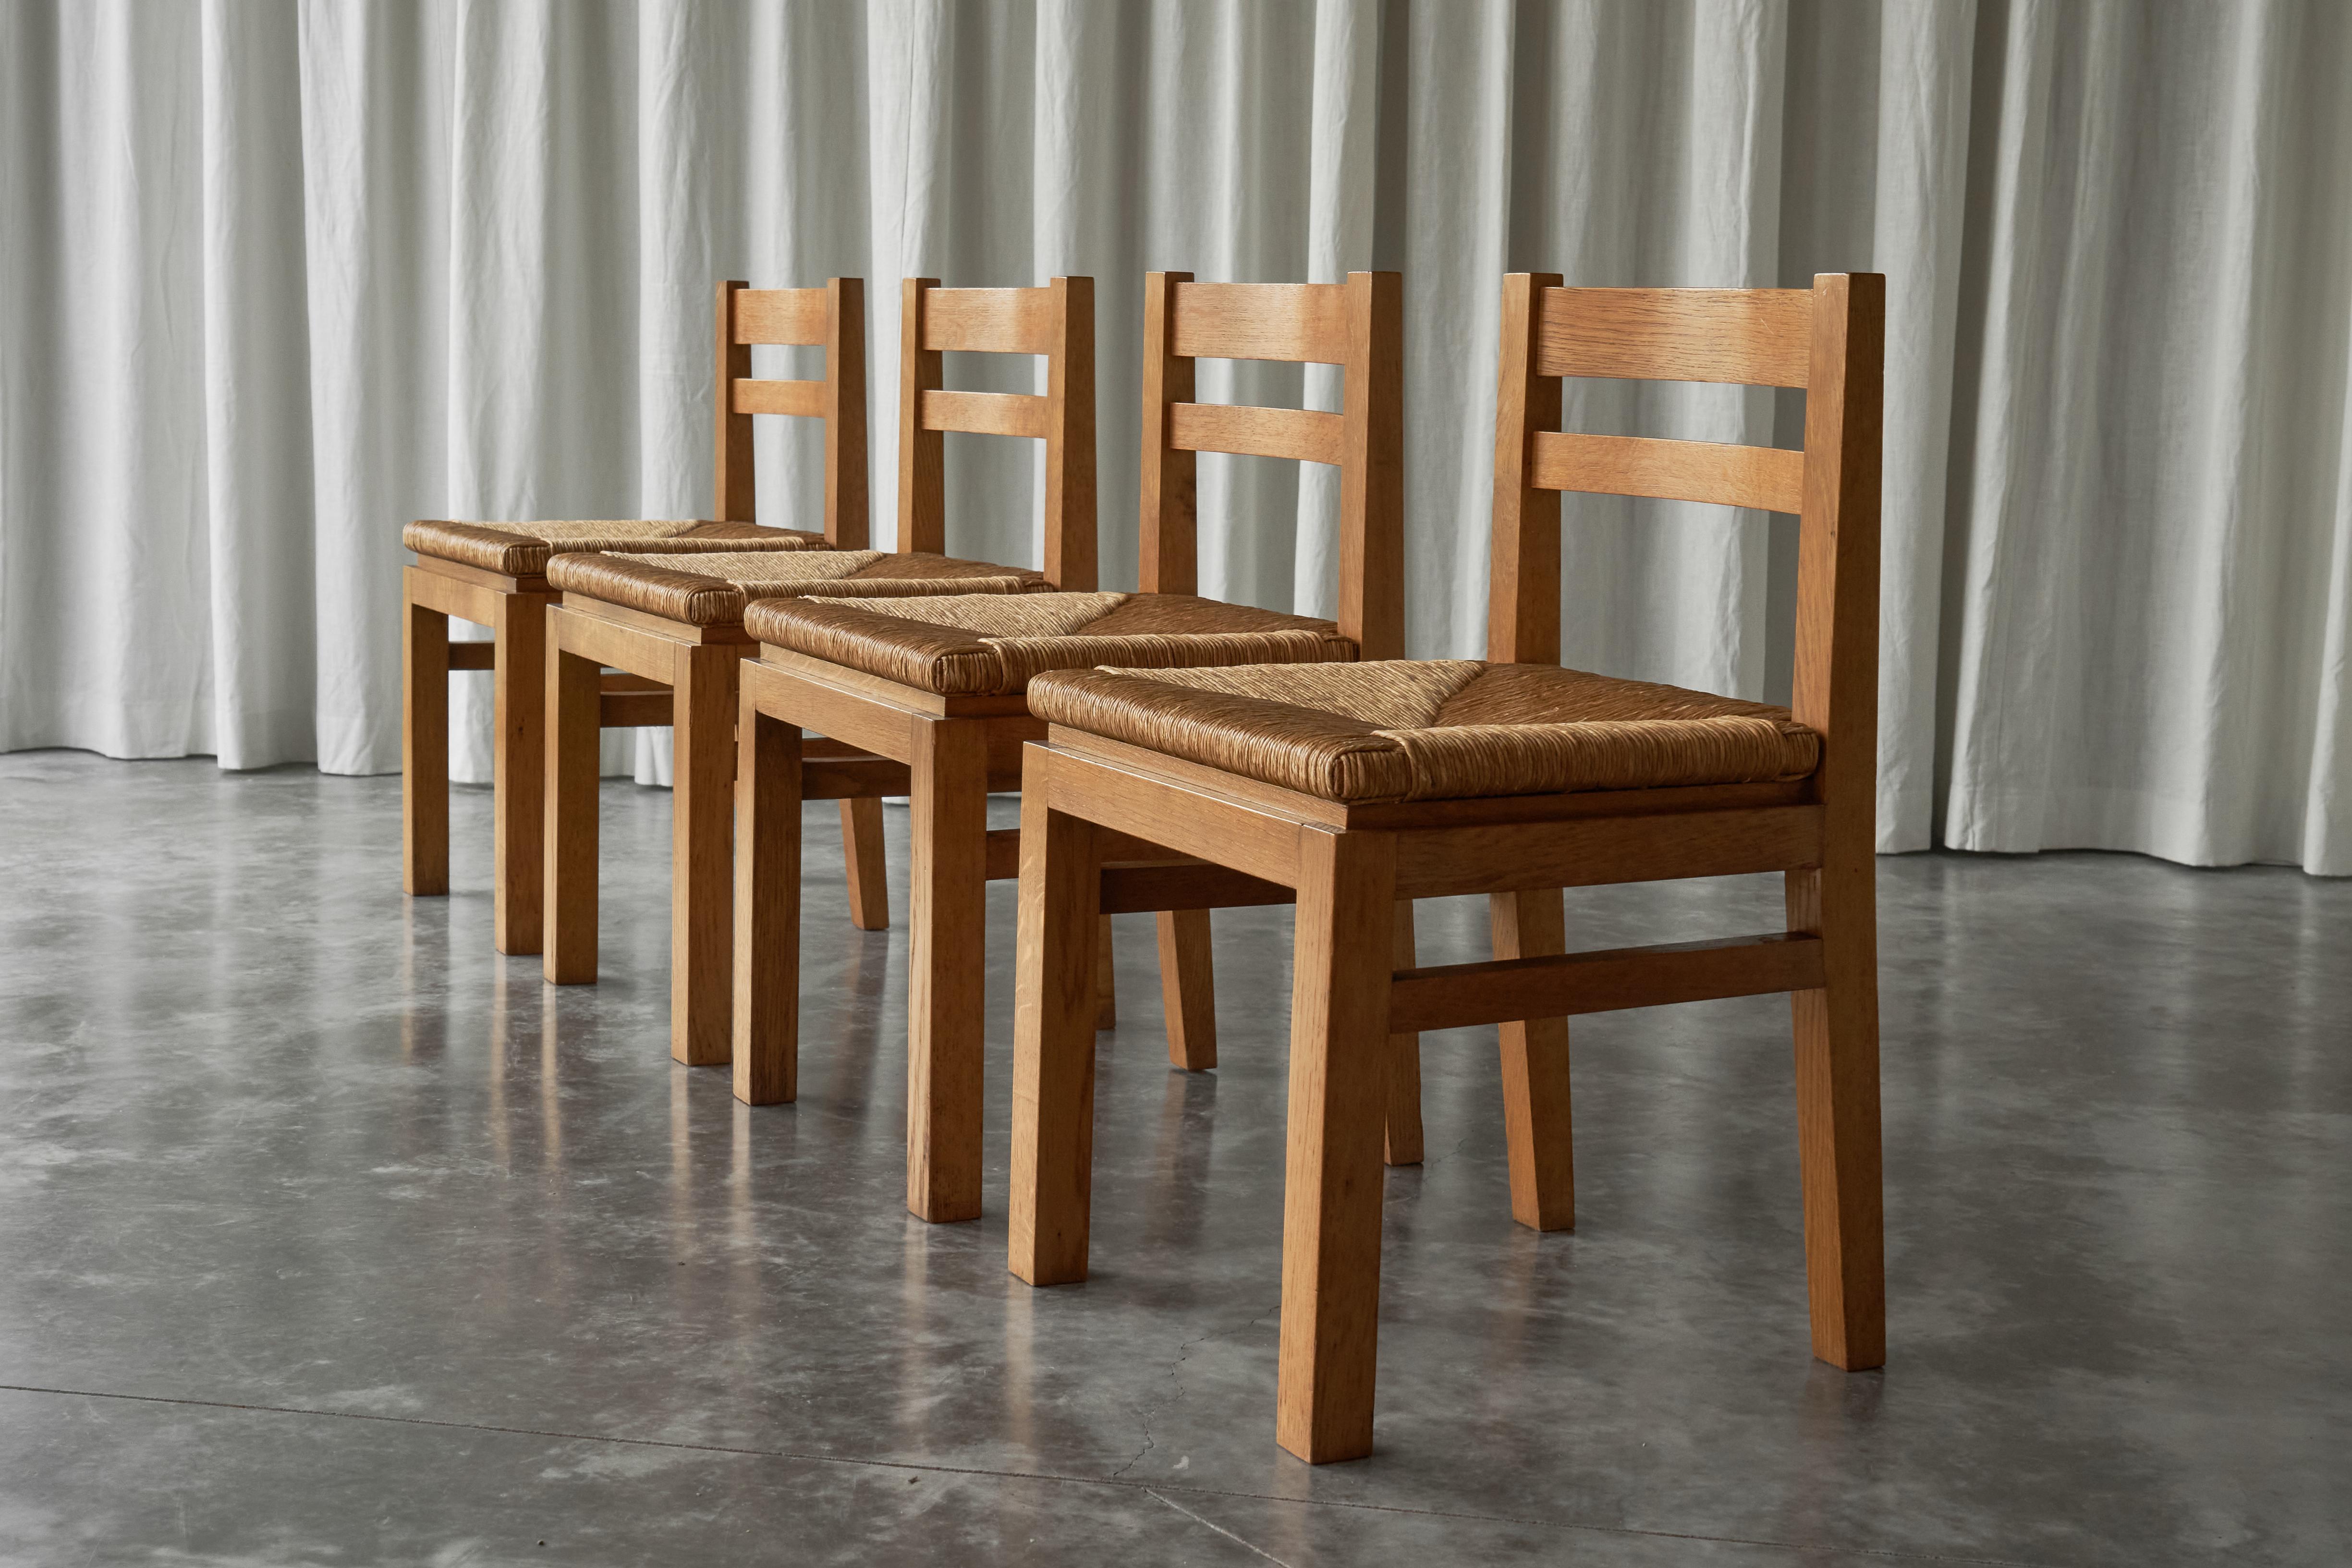 Ensemble de 4 chaises de salle à manger modernistes du milieu du siècle en chêne et paille, Belgique, années 1960.

Ce remarquable ensemble de quatre chaises de salle à manger modernistes provient du premier propriétaire et est conçu à la manière